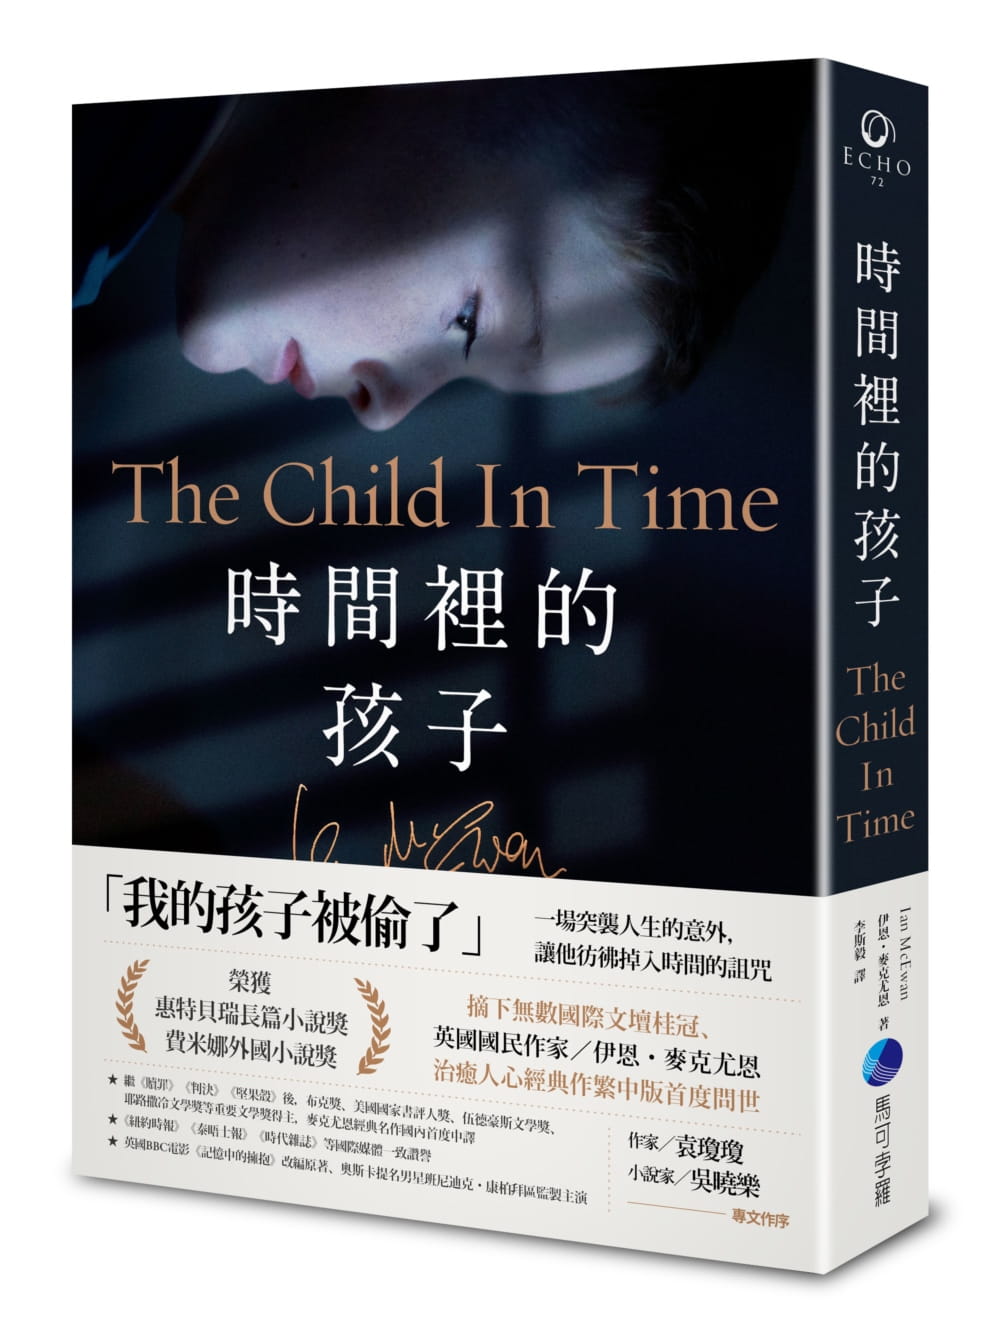 時間裡的孩子：BBC電影《記憶中的擁抱》改編原著，英國國民作家伊恩•麥克尤恩經典作繁中版首譯